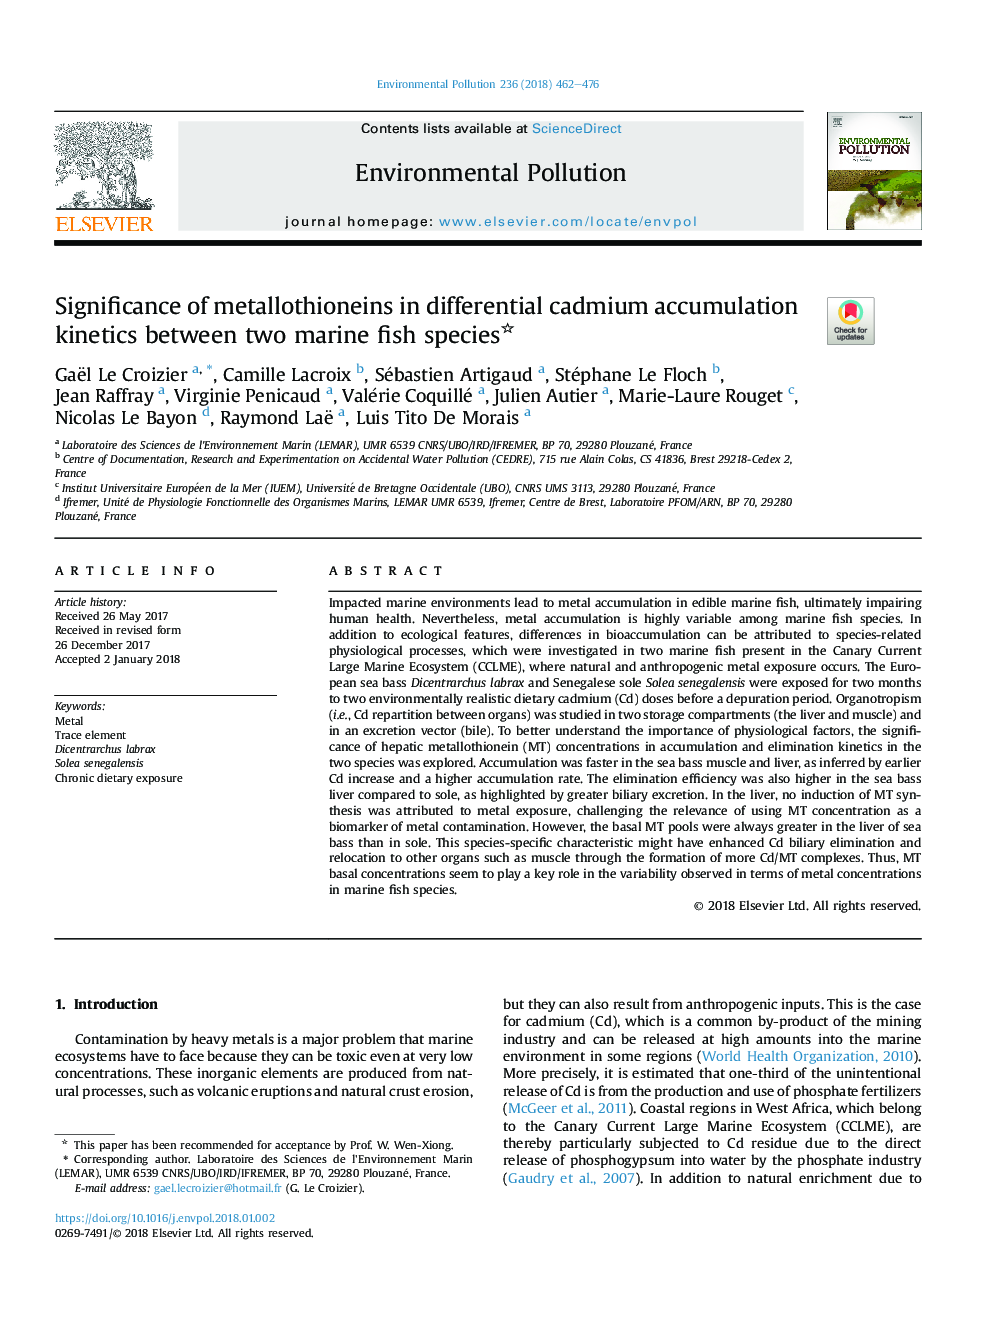 اهمیت فلوتونیئین در سینتیک تجمع کادمیوم بین دو گونه ماهی دریایی 